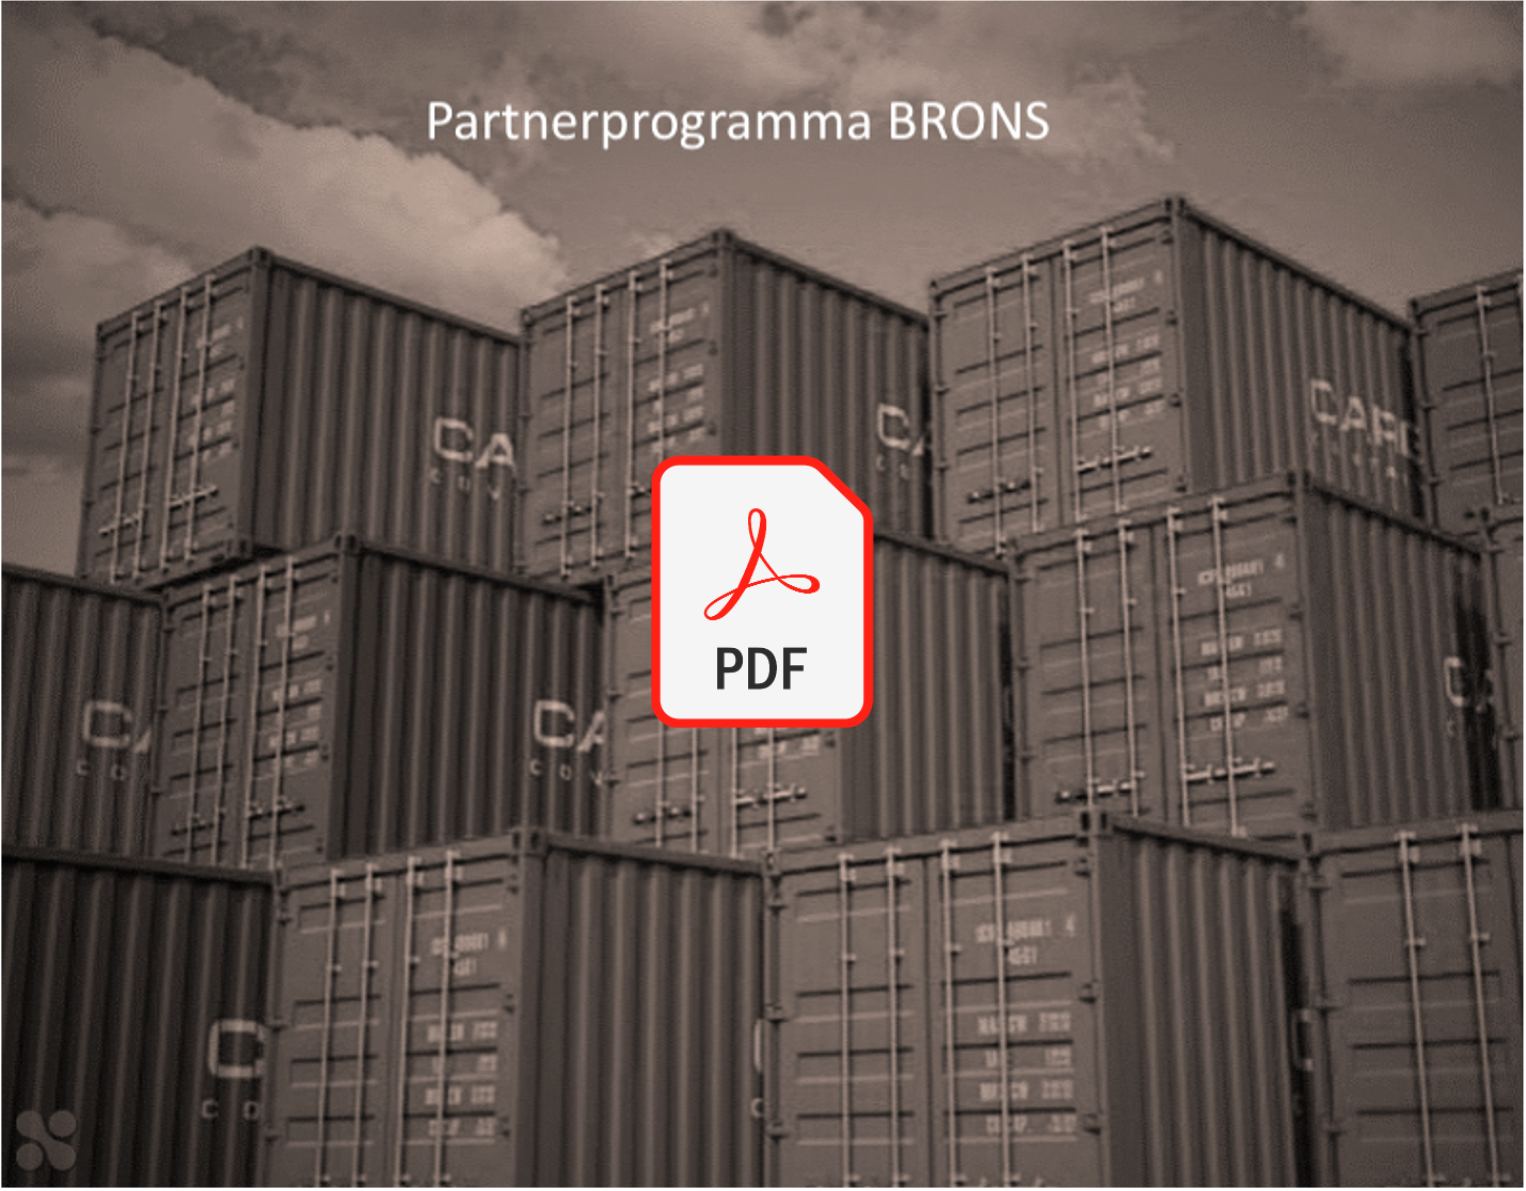 Partnerprogramma Brons